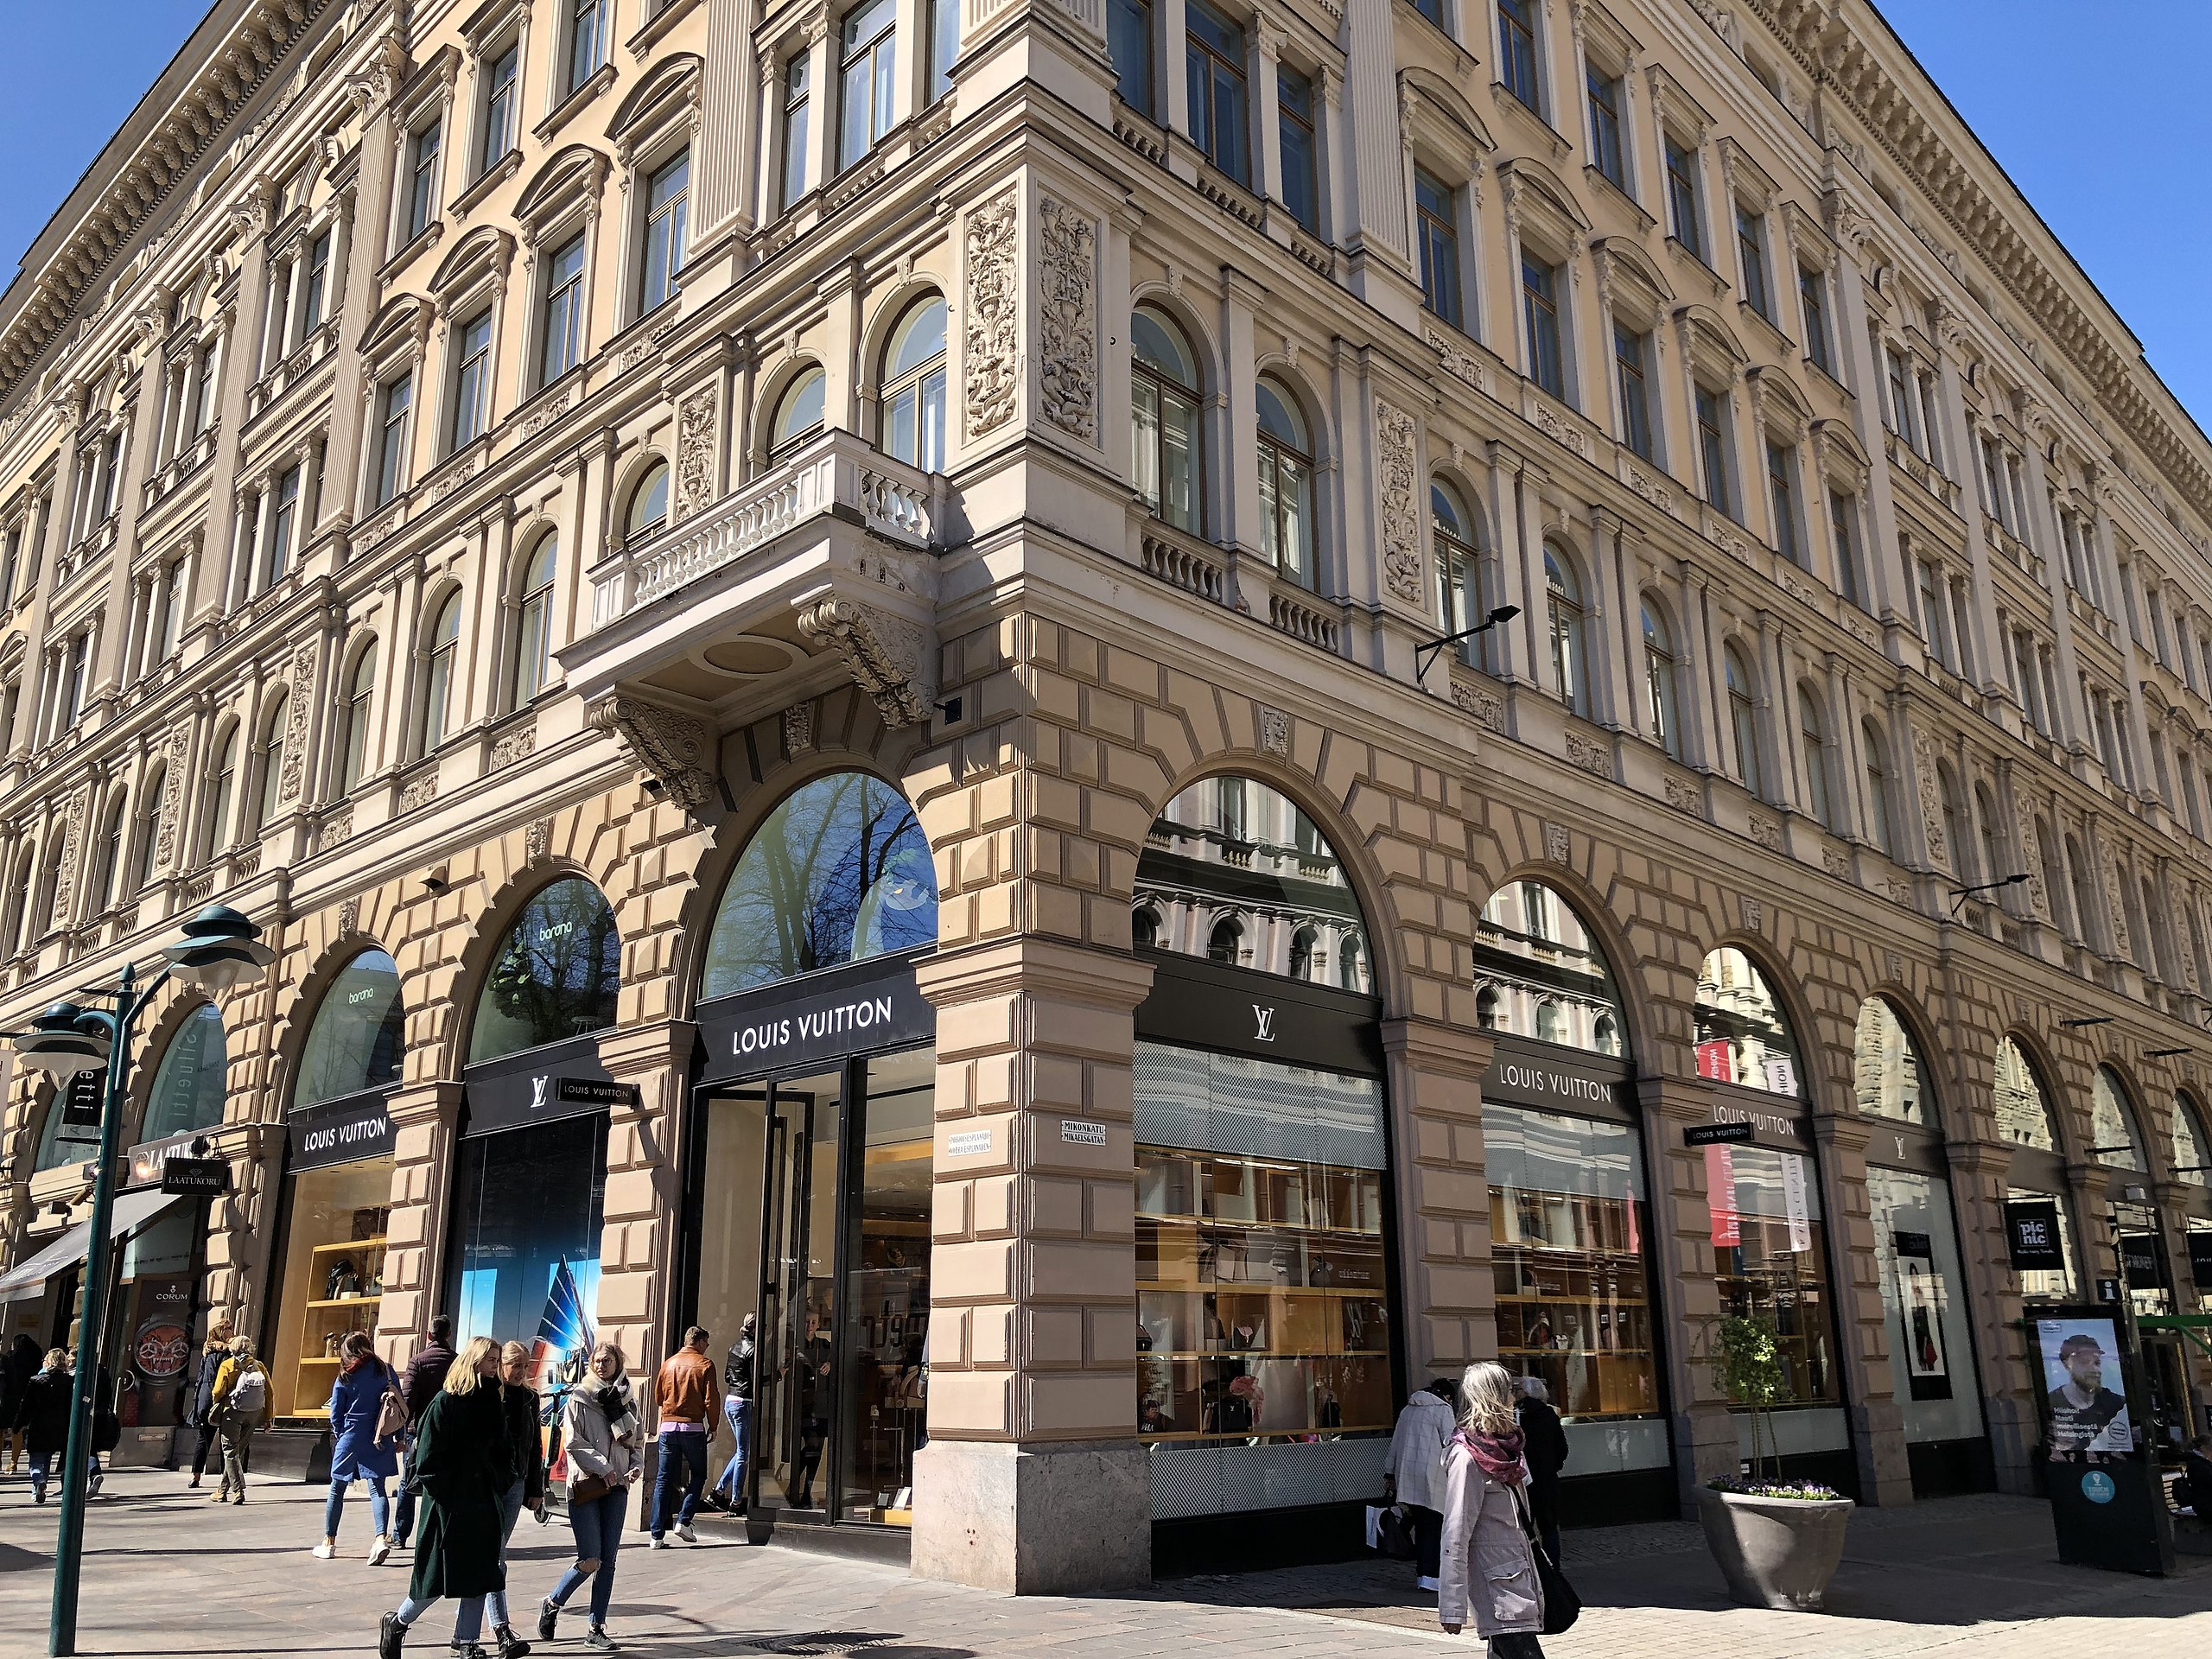 Louis Vuitton Helsinki Store - Leather goods store in Helsinki